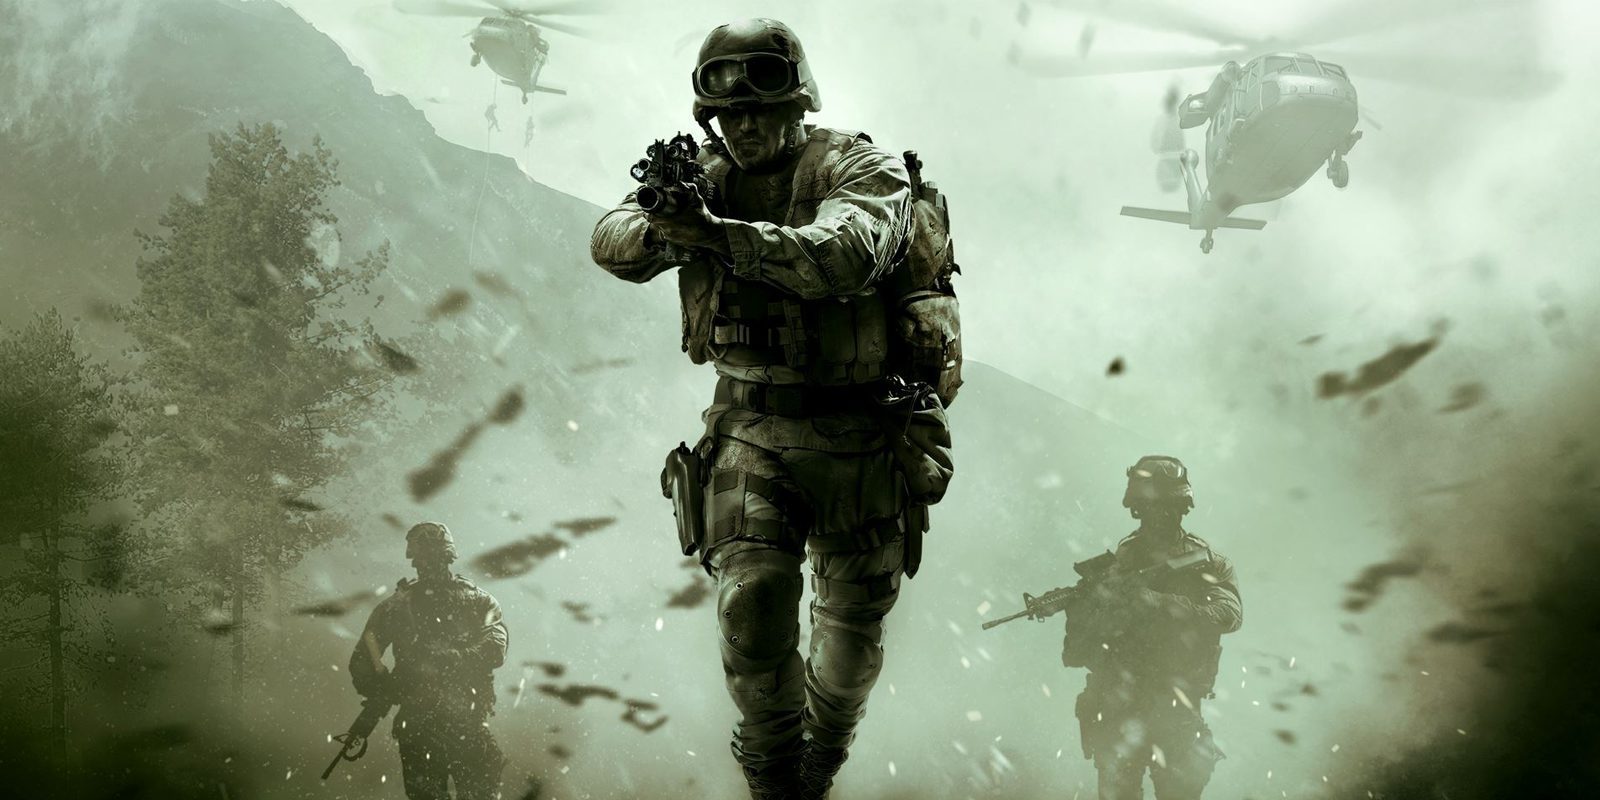 King está desarrollando un 'Call of Duty' para móviles